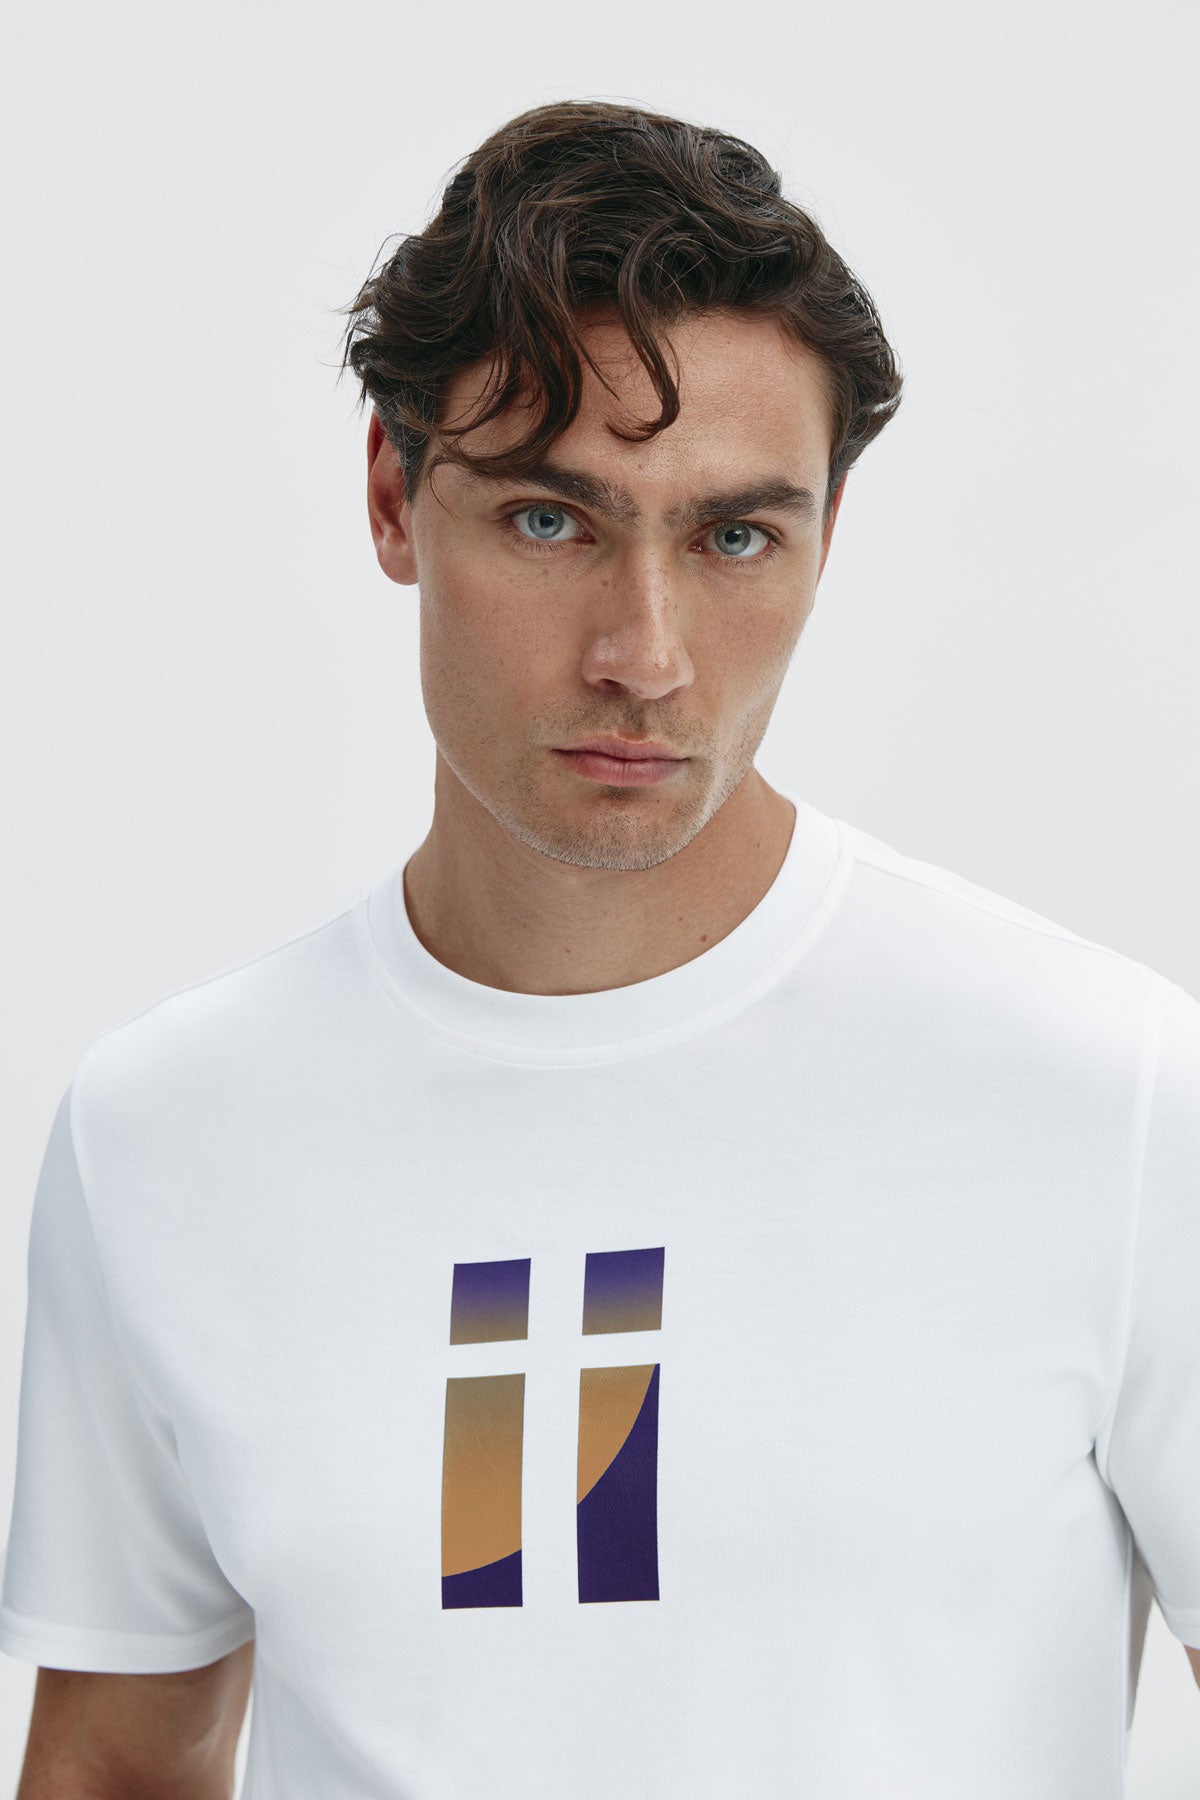 Camiseta básica de hombre blanca con logo estampado de espiral de manga corta, antiarrugas y antimanchas. Foto retrato